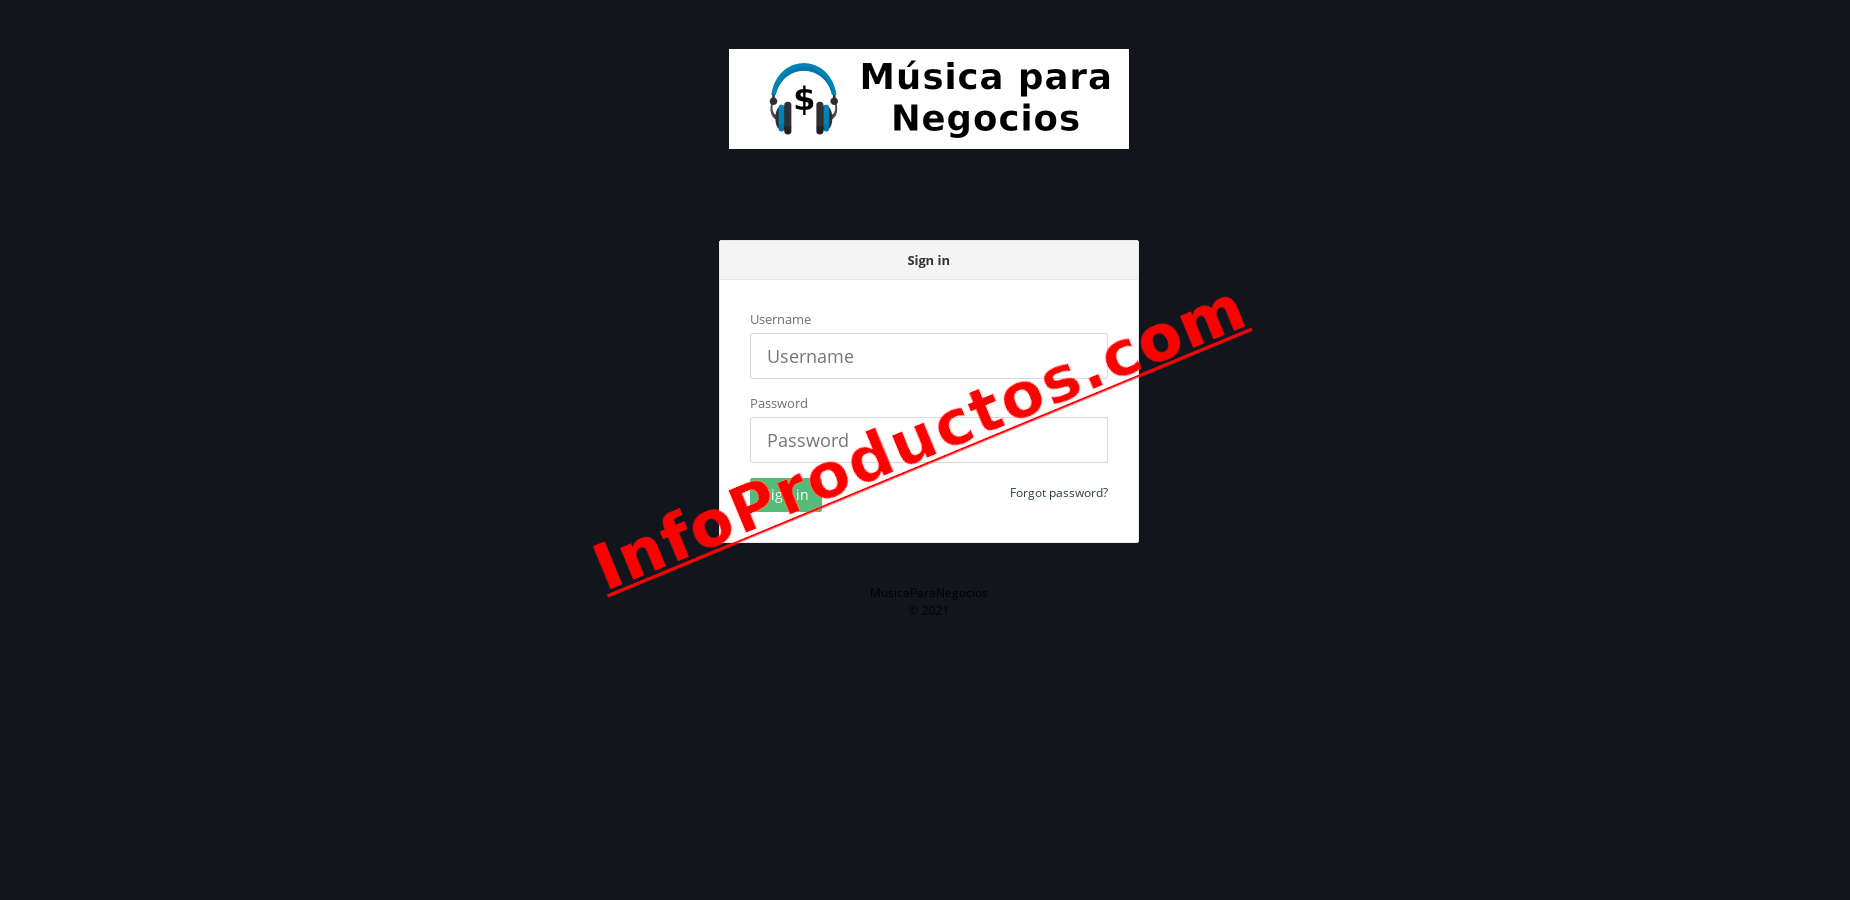 MusicaParaNegocios-PaginaInicio-infoproductos.com